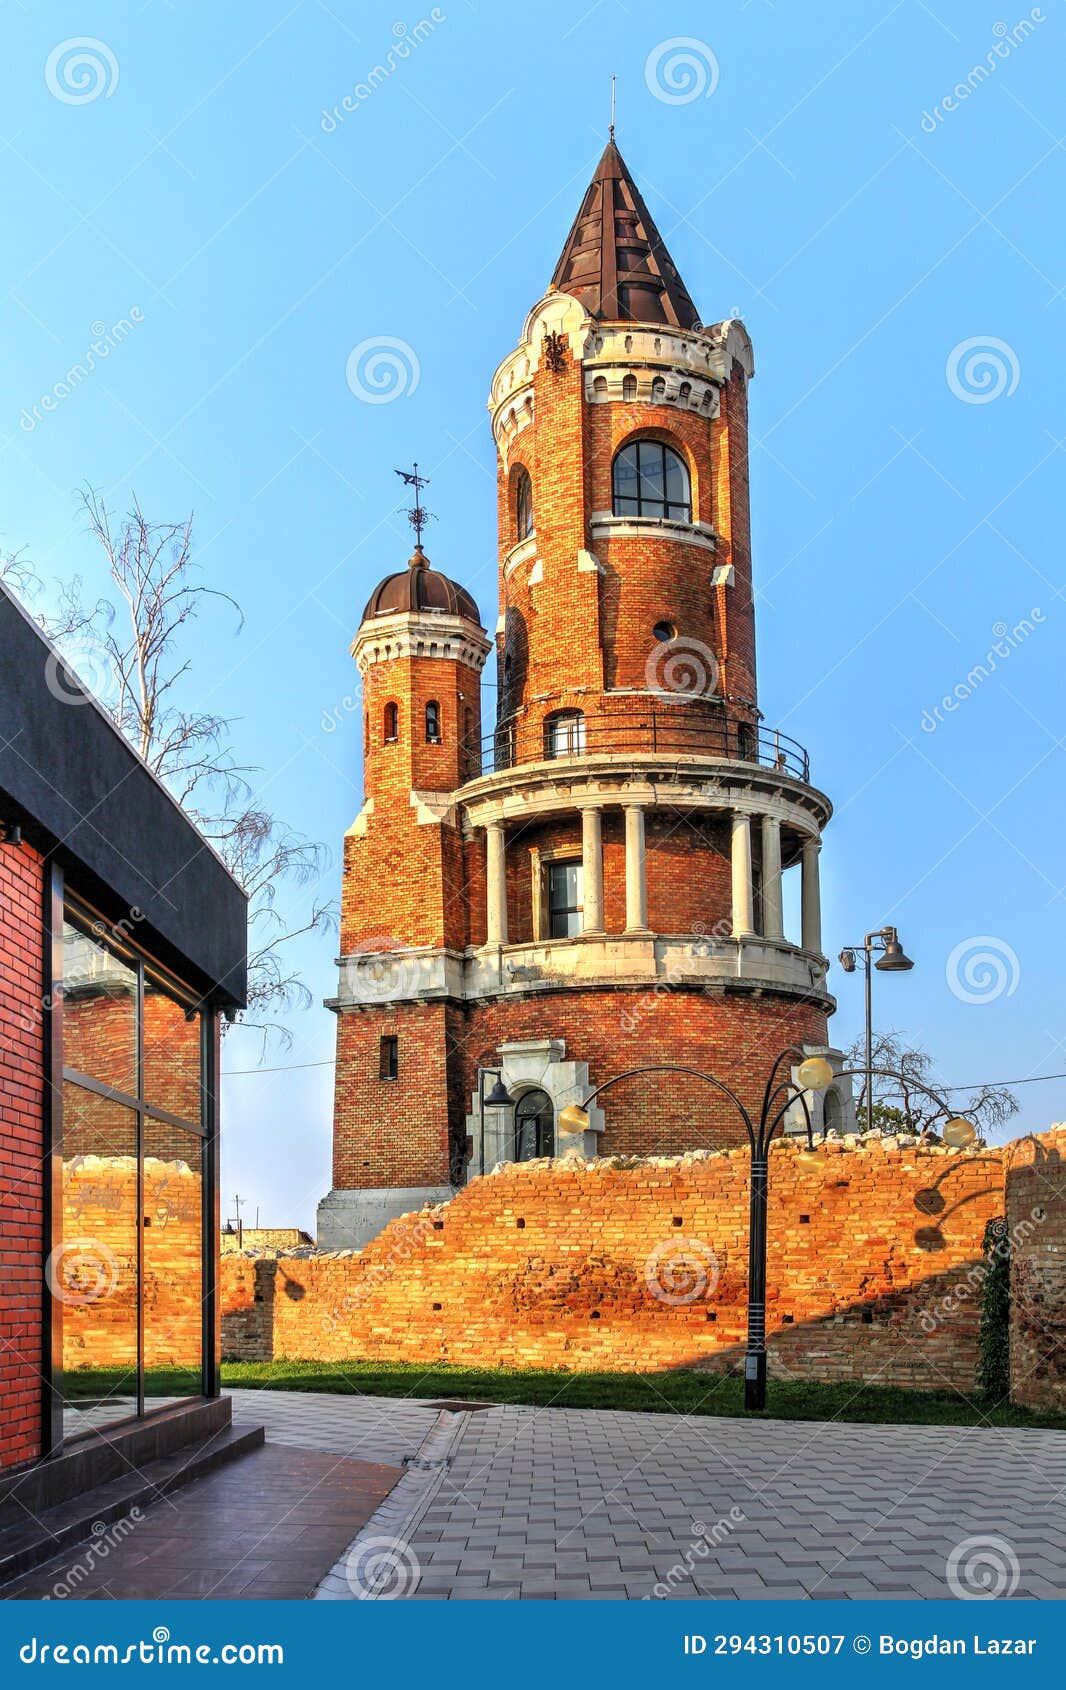 gardos tower, zemun, belgrade, serbia